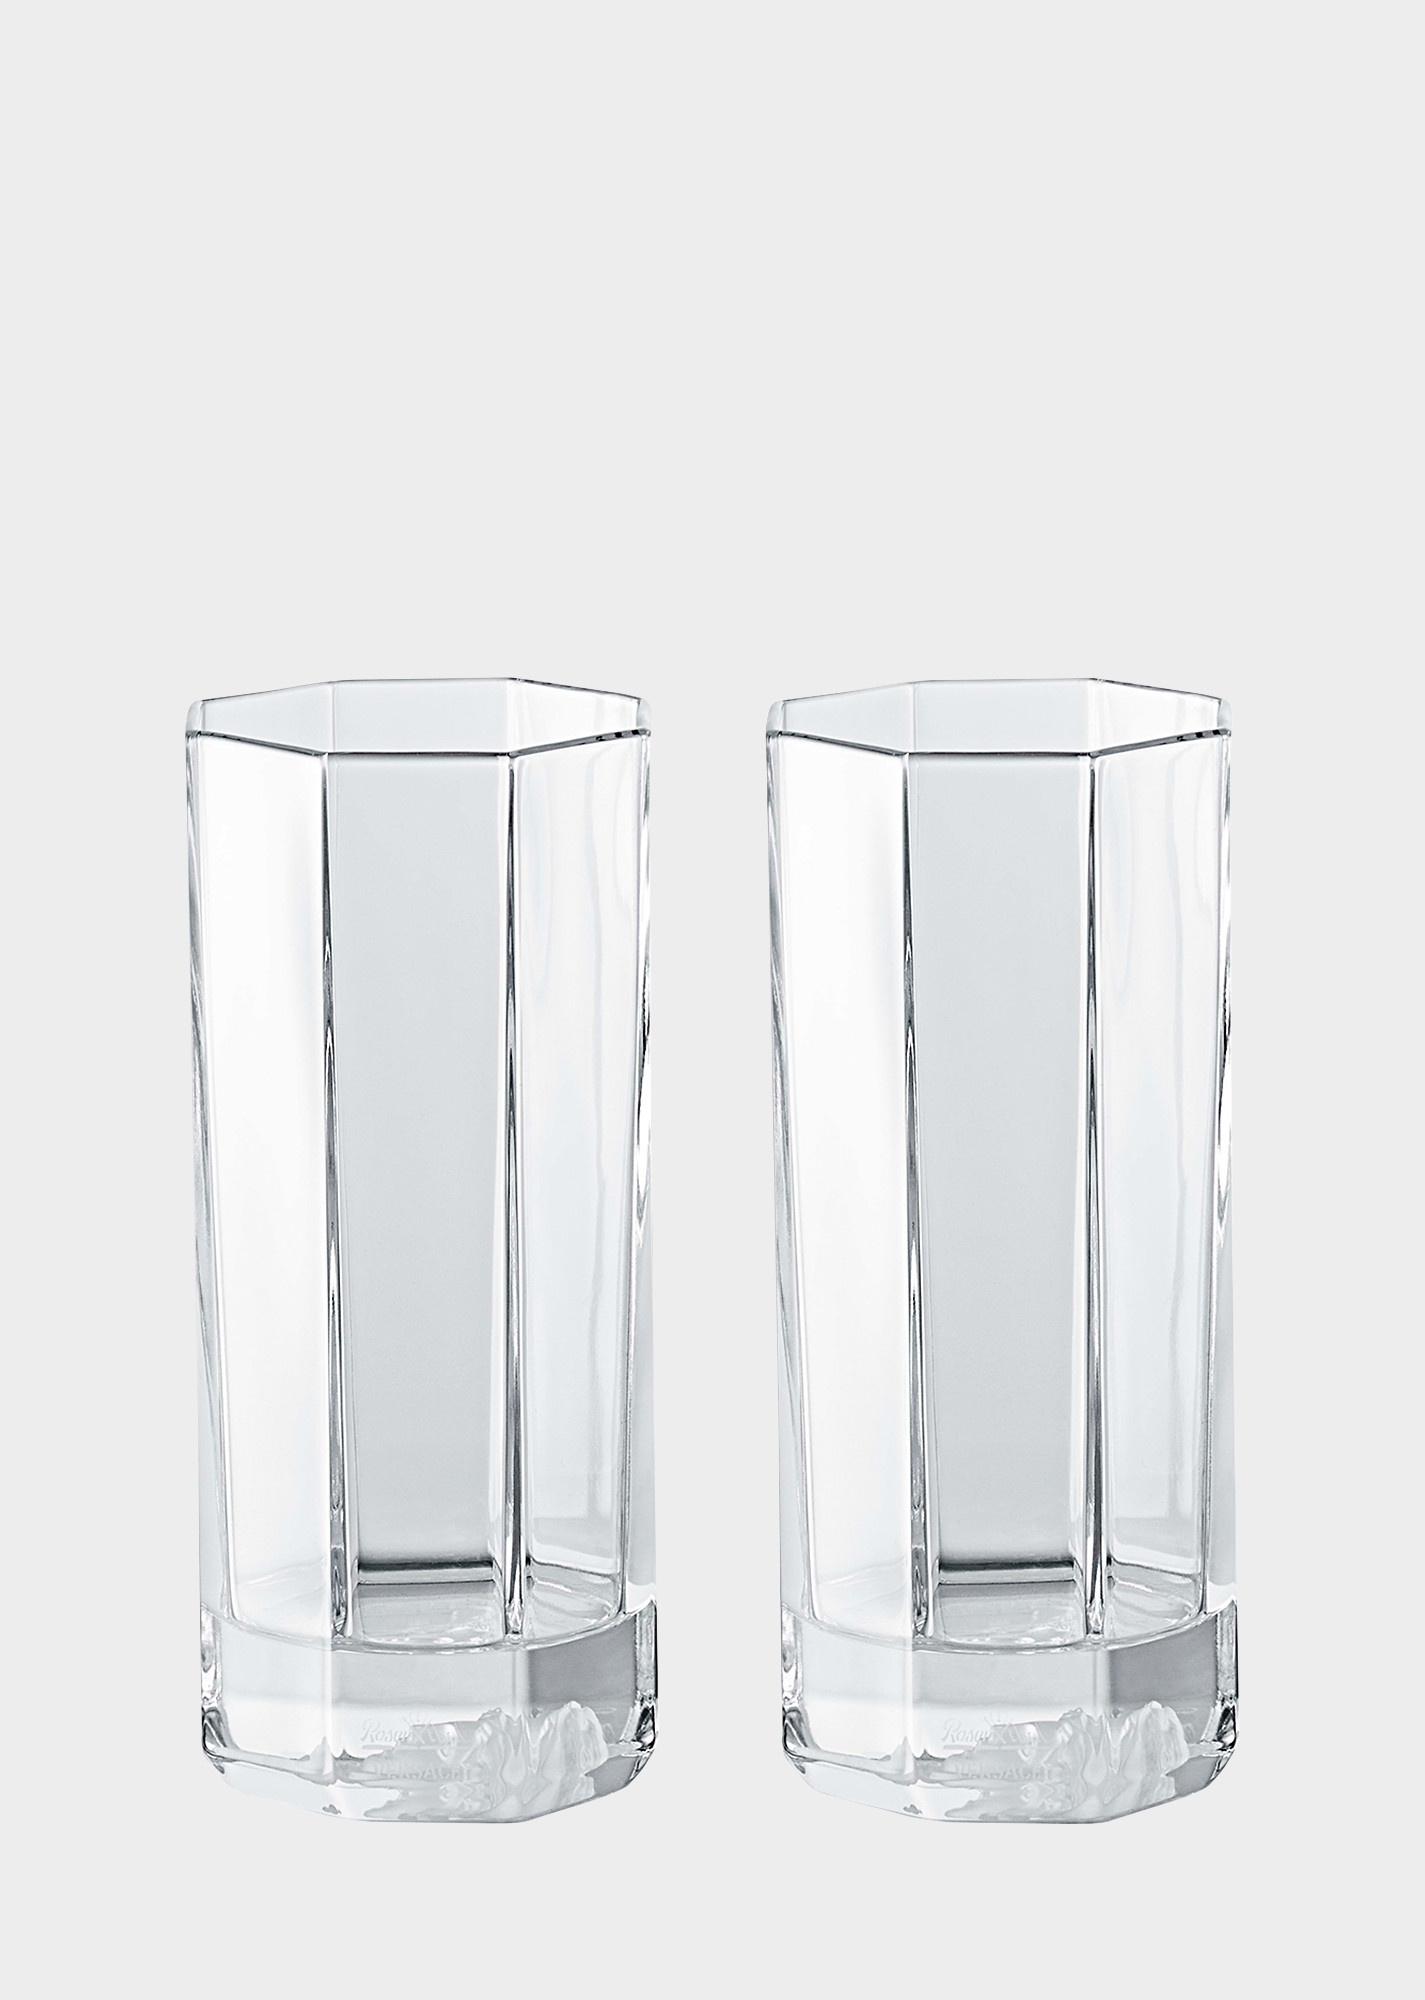 best crystal vase brands of versace home luxury glass crystal official website pertaining to 90 n48874 n110835 n2066 20 medusalumierelongdrinkglassset glassandcrystal versace online store 1 1